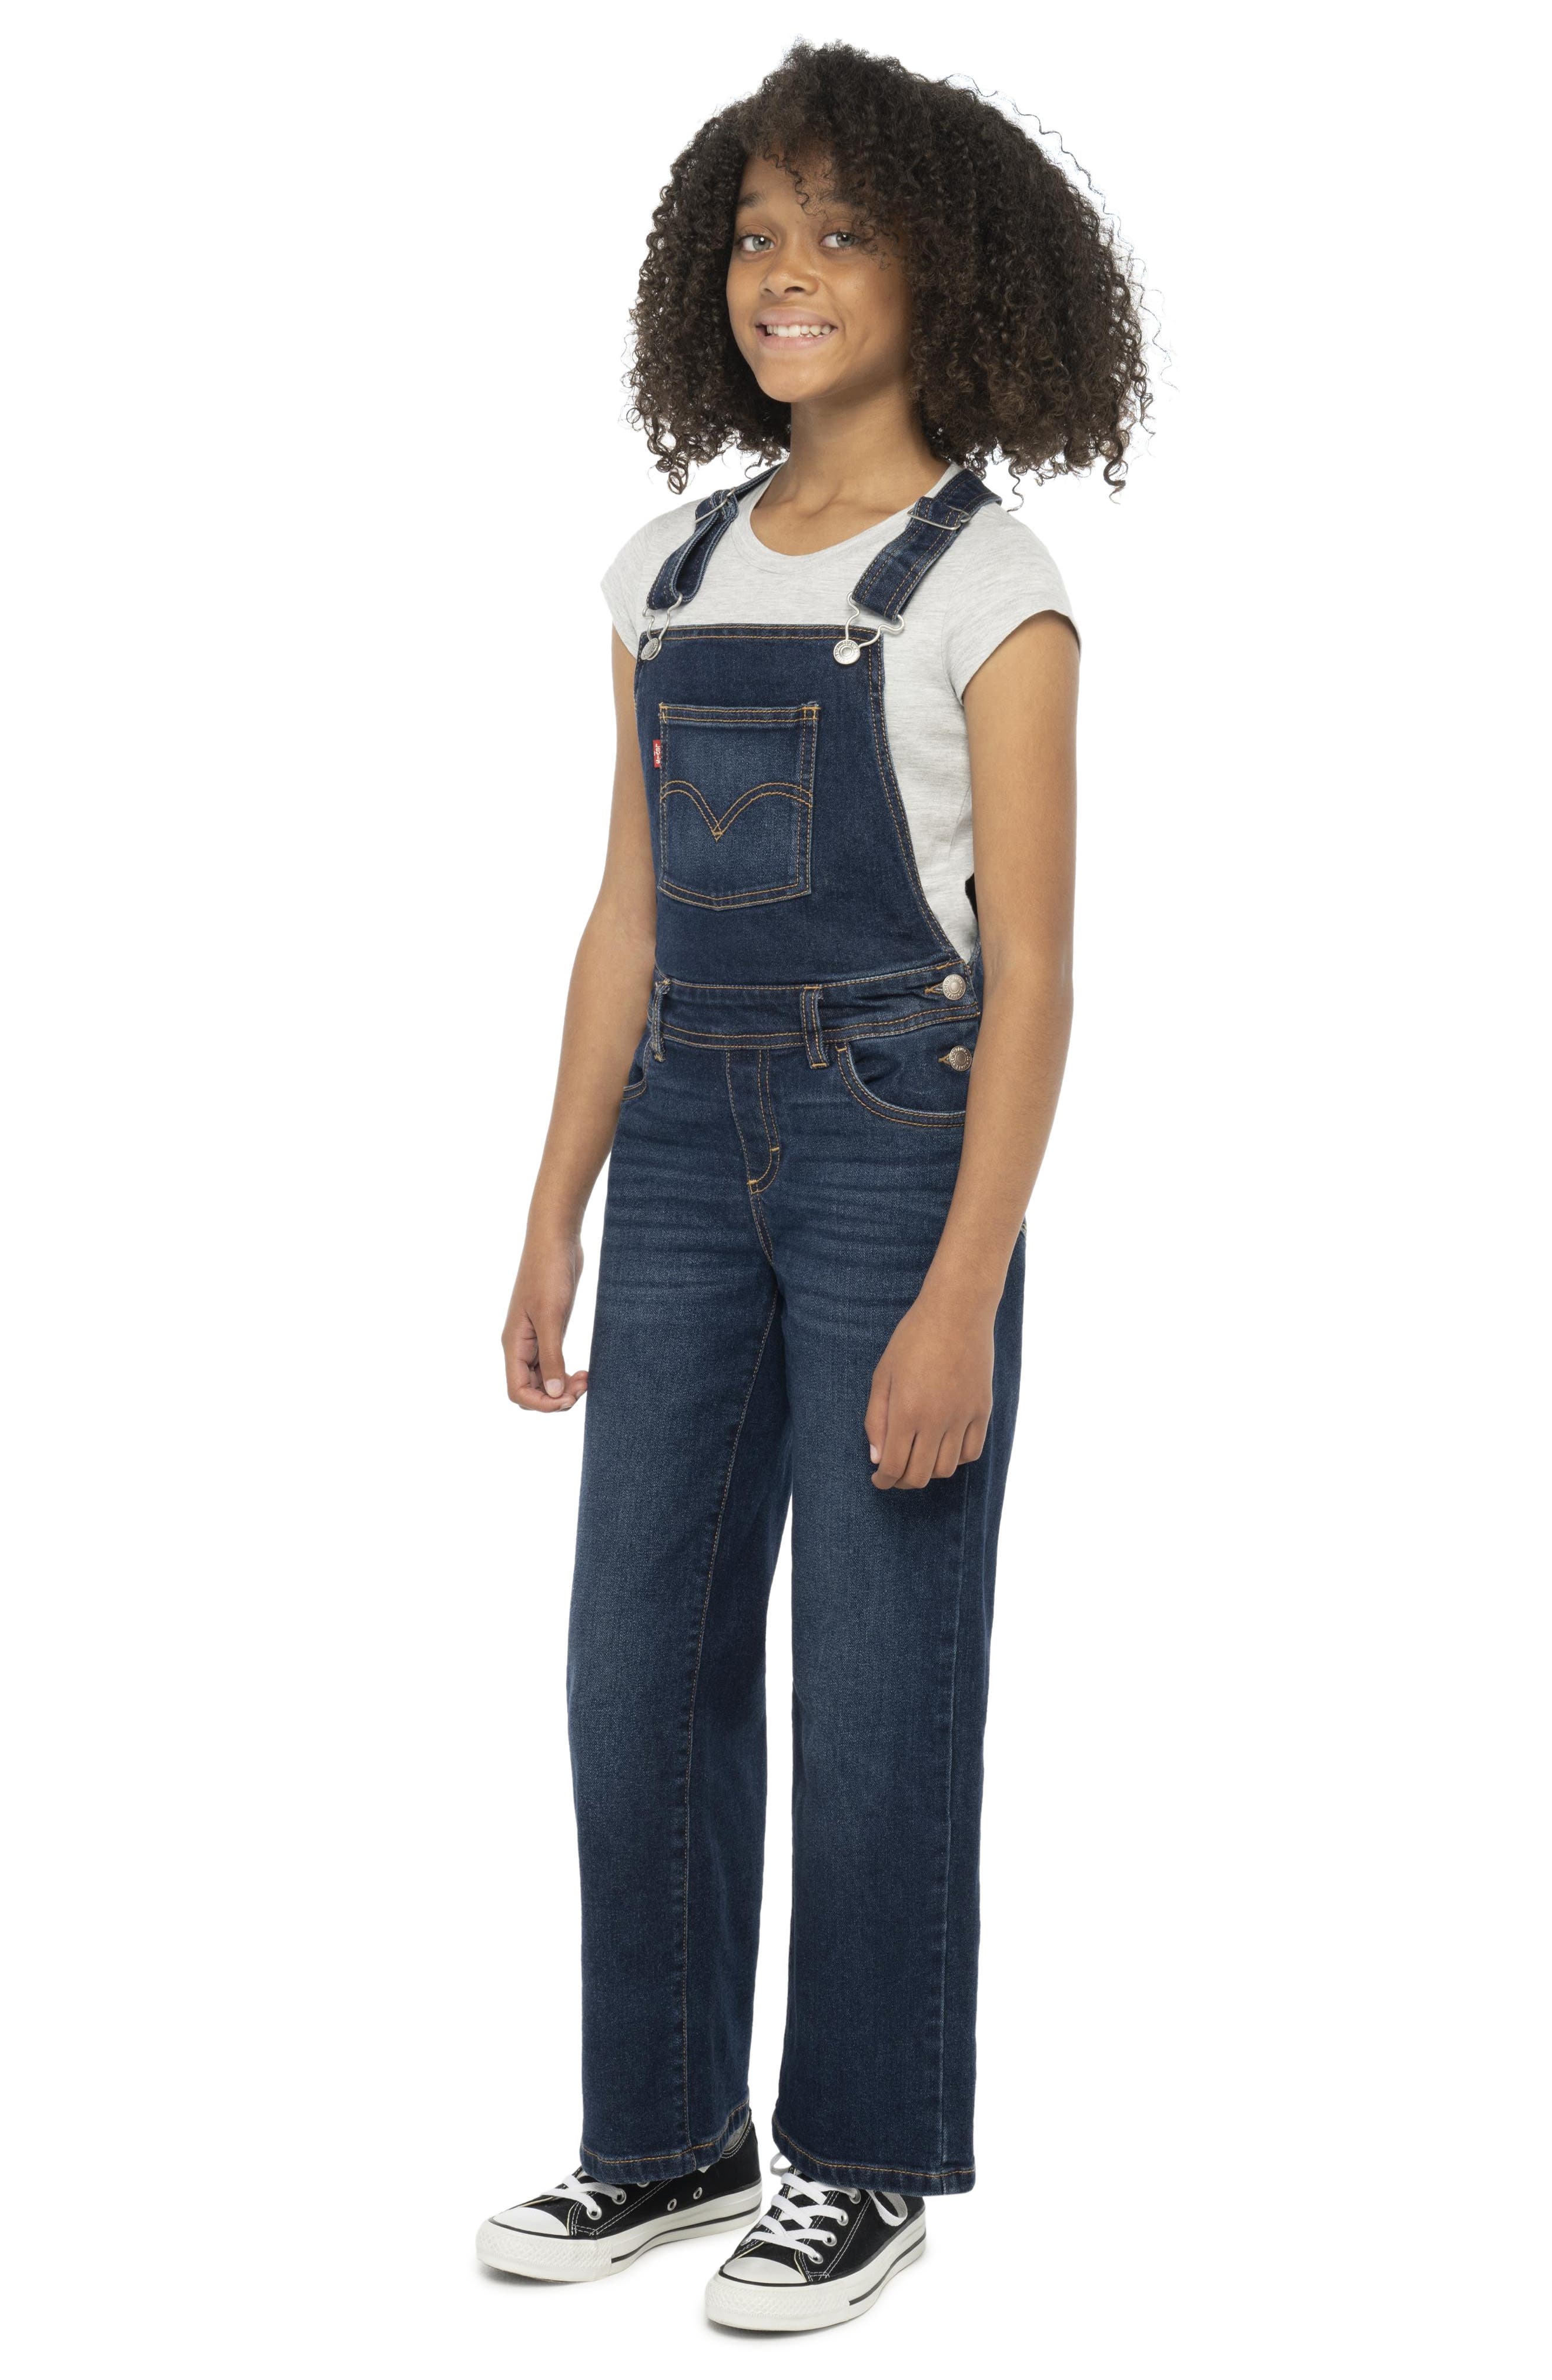 1940s Children’s Clothing: Girls, Boys, Baby, Toddler levis Kids Shoe Cut Overalls Size 3T in Indigo Daze at Nordstrom $37.99 AT vintagedancer.com